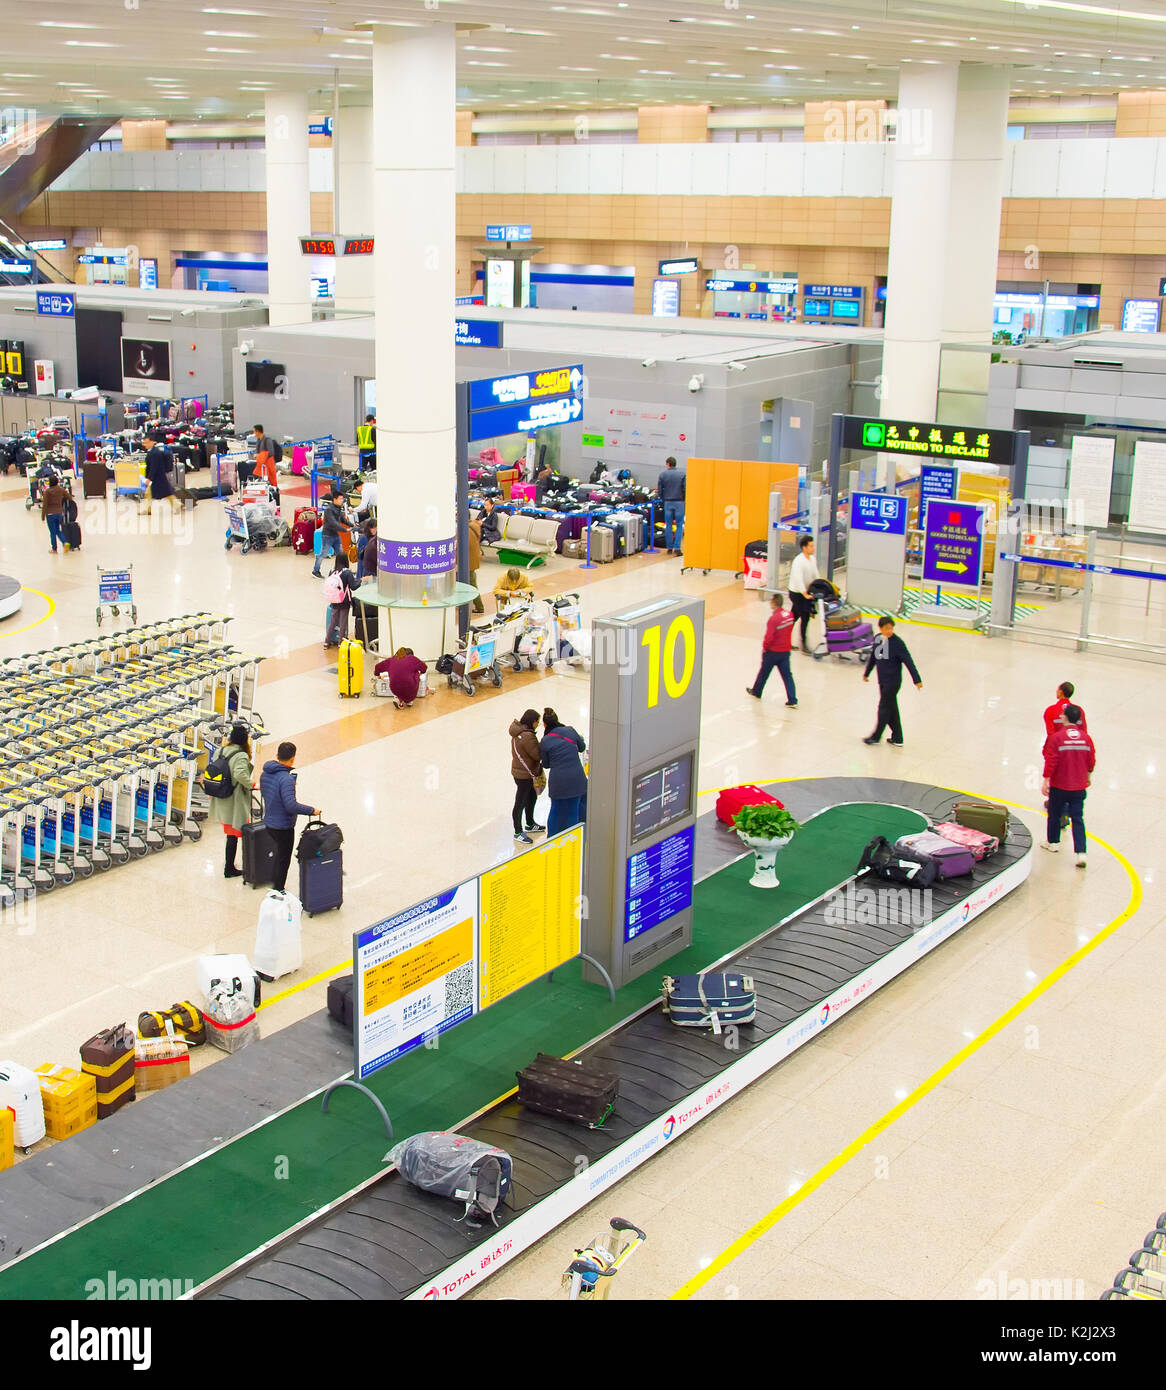 SHANGHAI, China - DEC 26, 2106: la gente en el aeropuerto de Shanghai Pudong llegada contador de inmigración. El aeropuerto de Pudong es un gran cubo de aviación de China Foto de stock